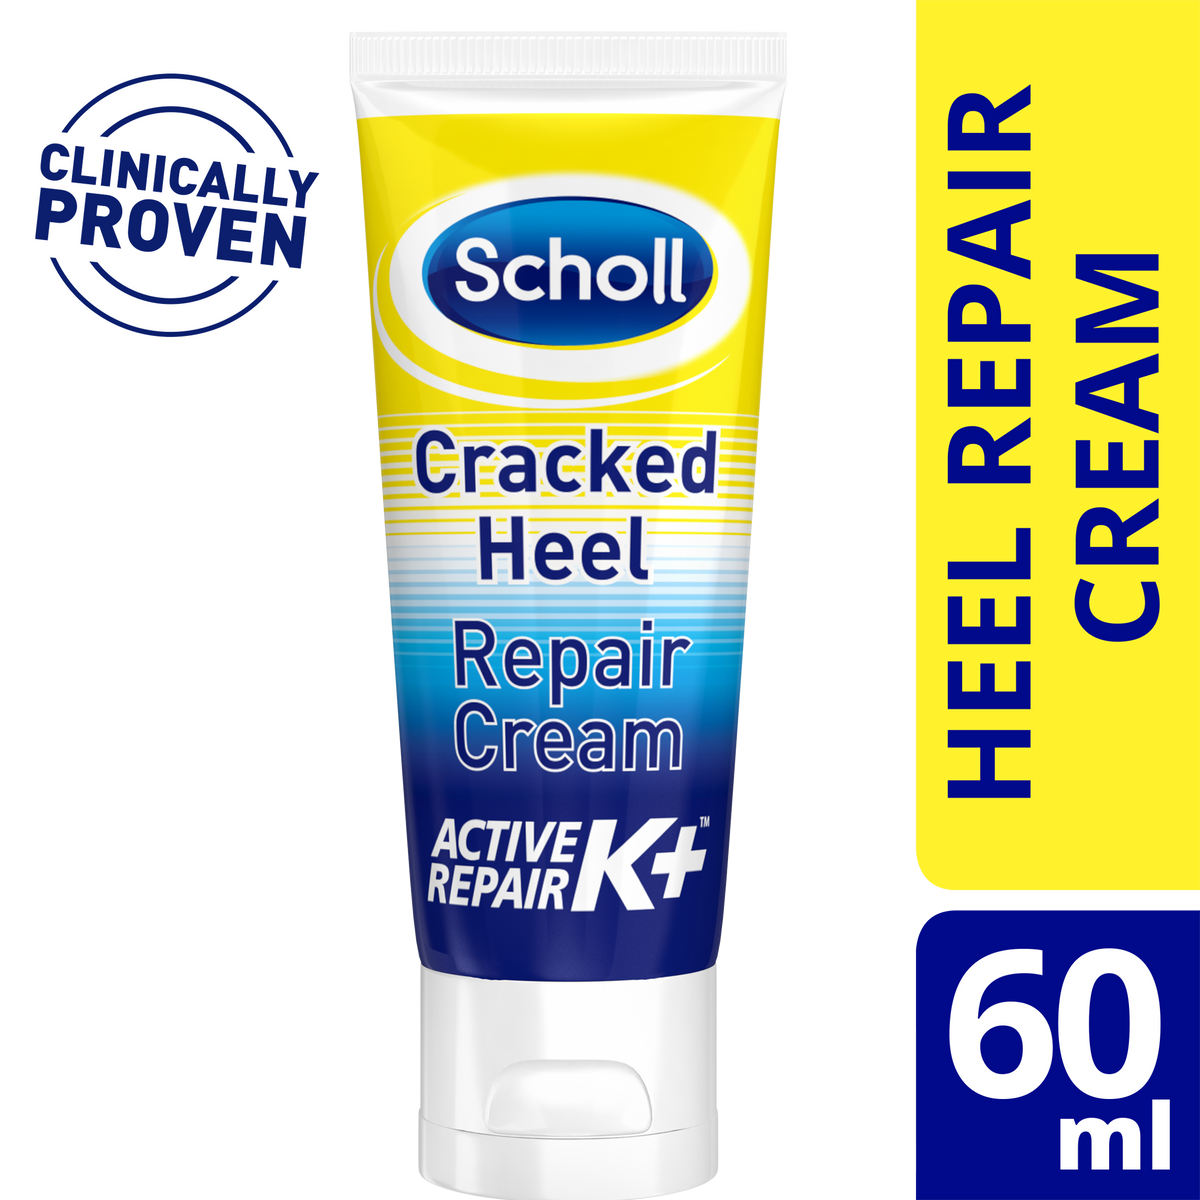 scholl-cracked-heel-repair-cream-k